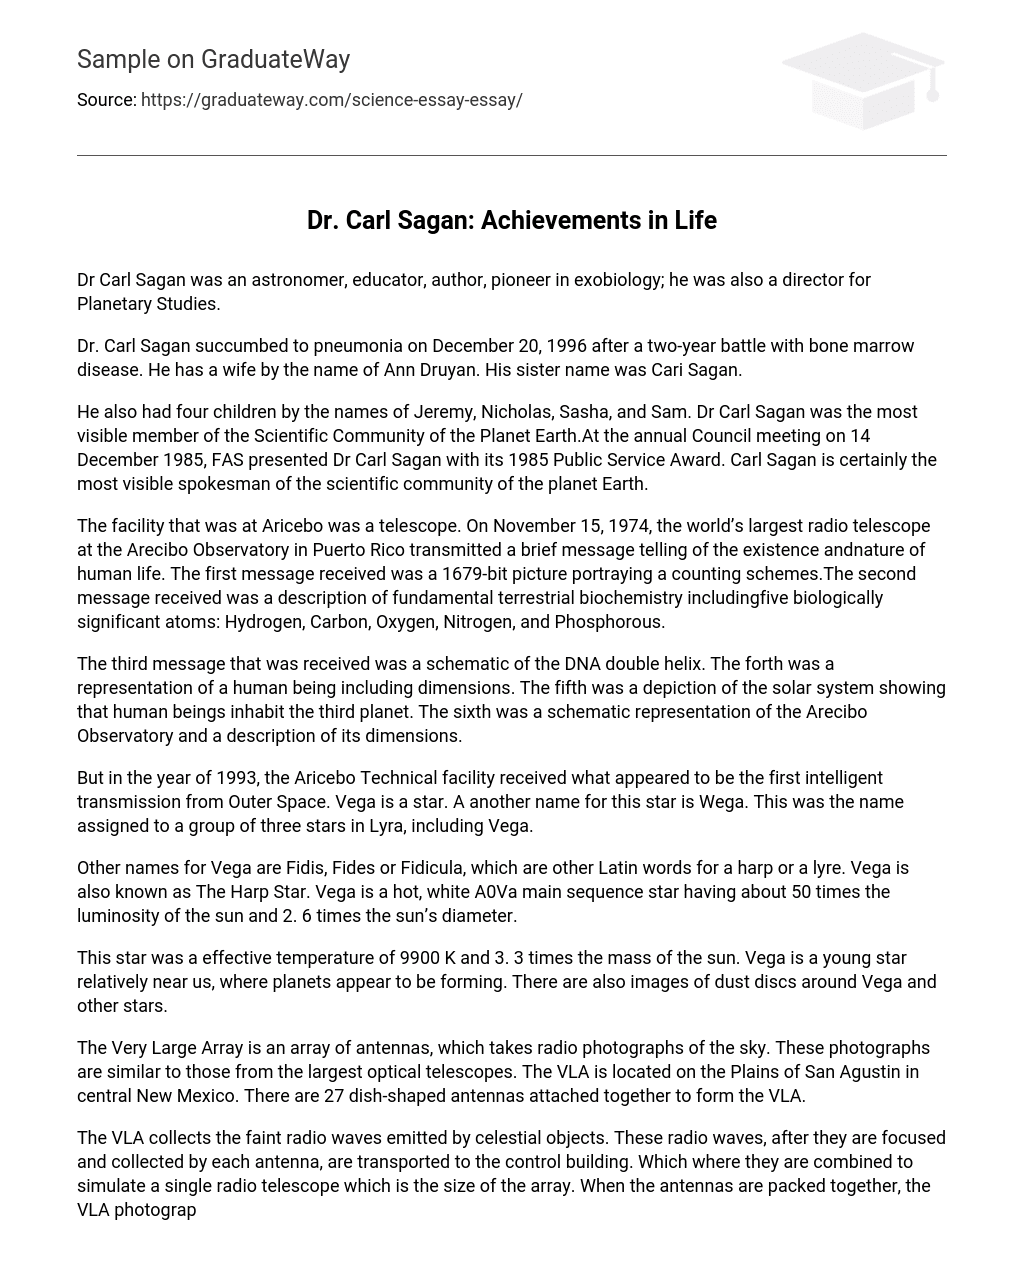 Dr. Carl Sagan: Achievements in Life